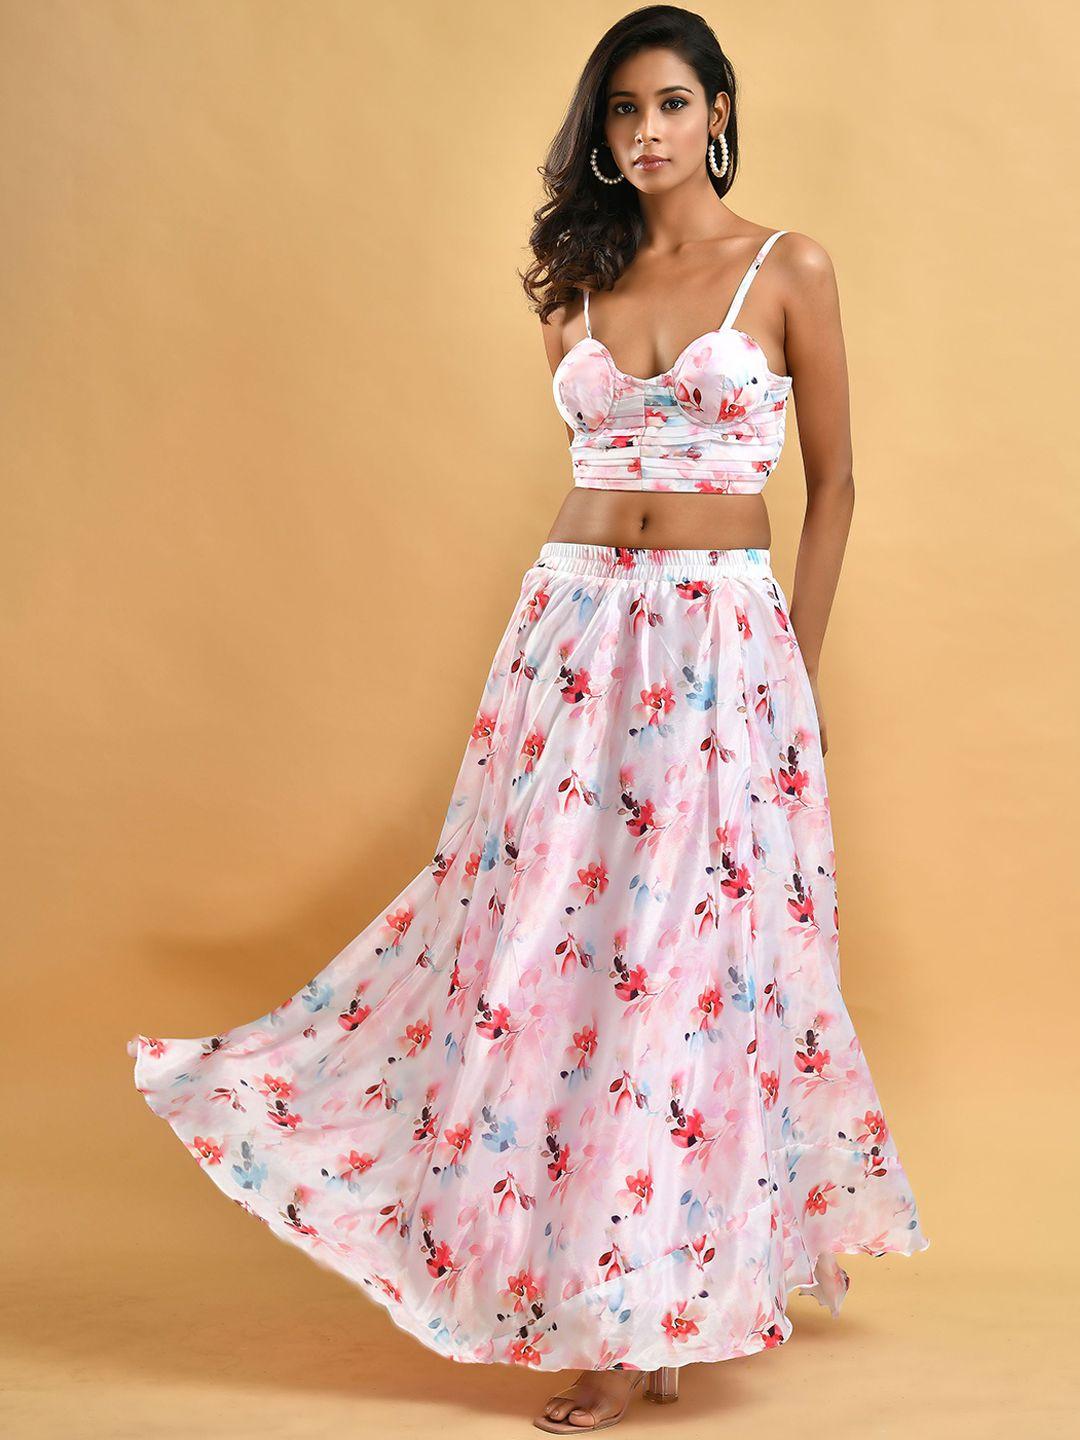 disli floral printed top & skirt